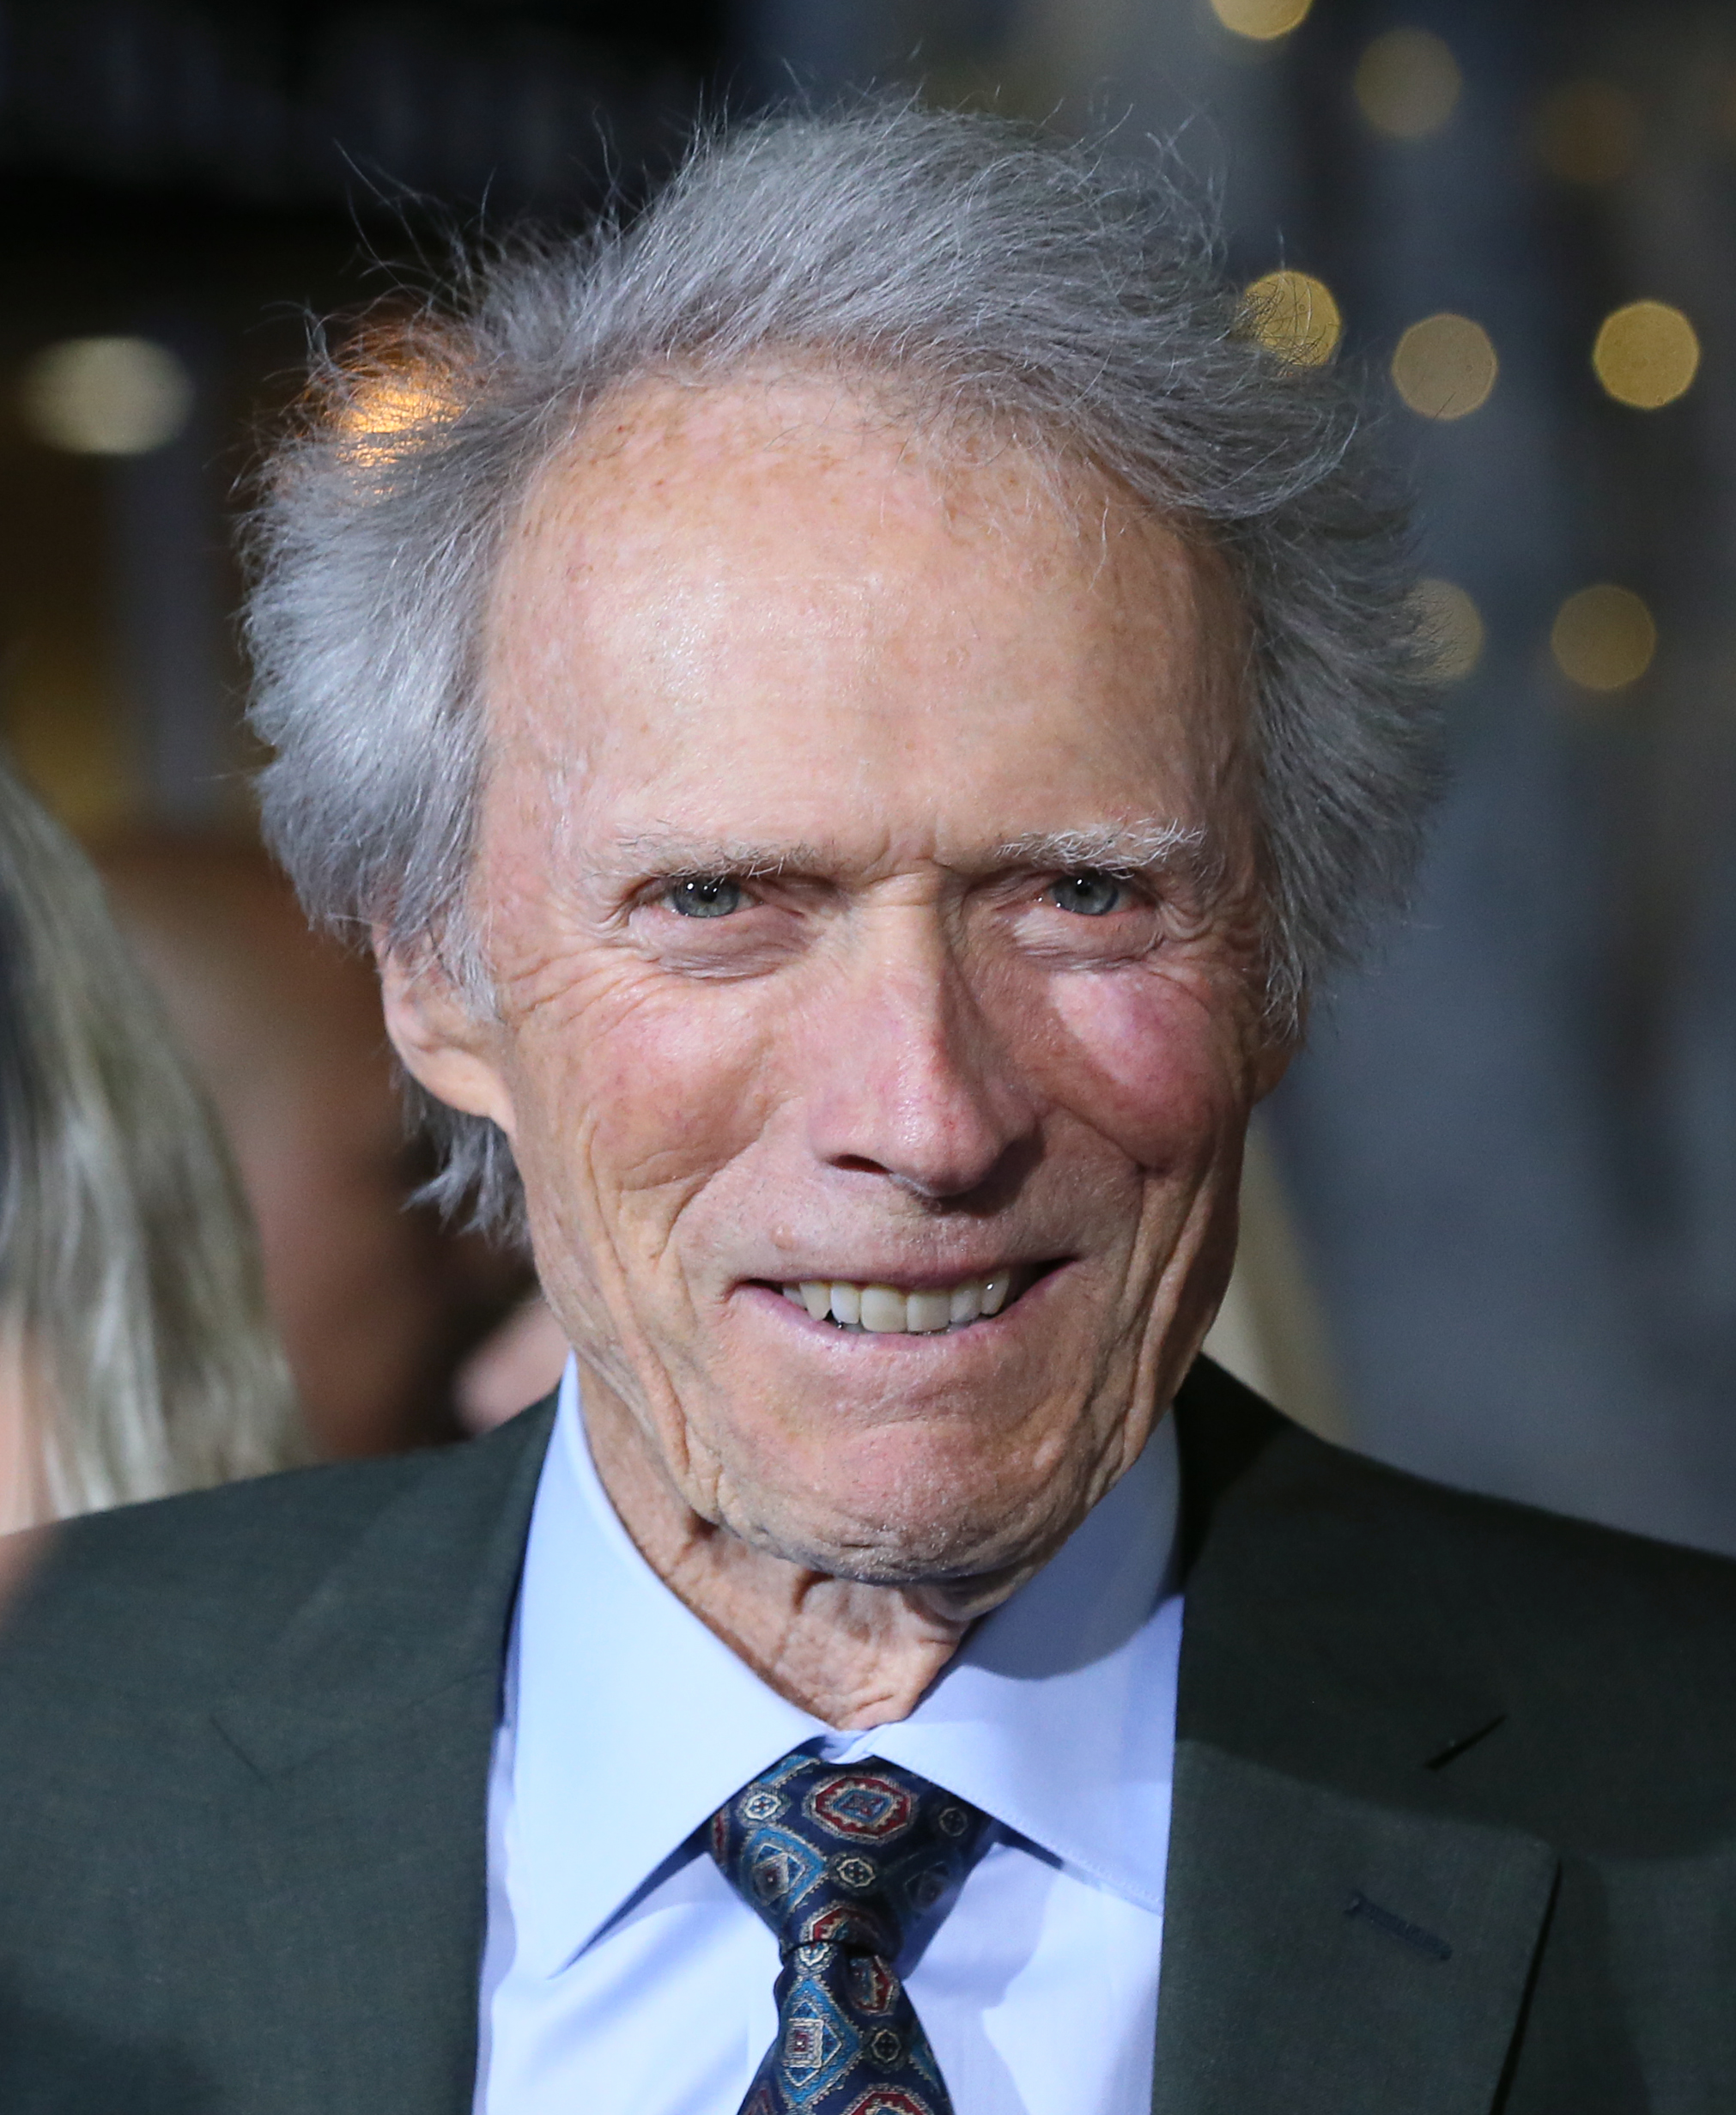 Clint Eastwood asiste al estreno mundial de "The Mule" de Warner Bros. Pictures en el Regency Village Theatre de Westwood, California, el 10 de diciembre de 2018. | Fuente: Getty Images